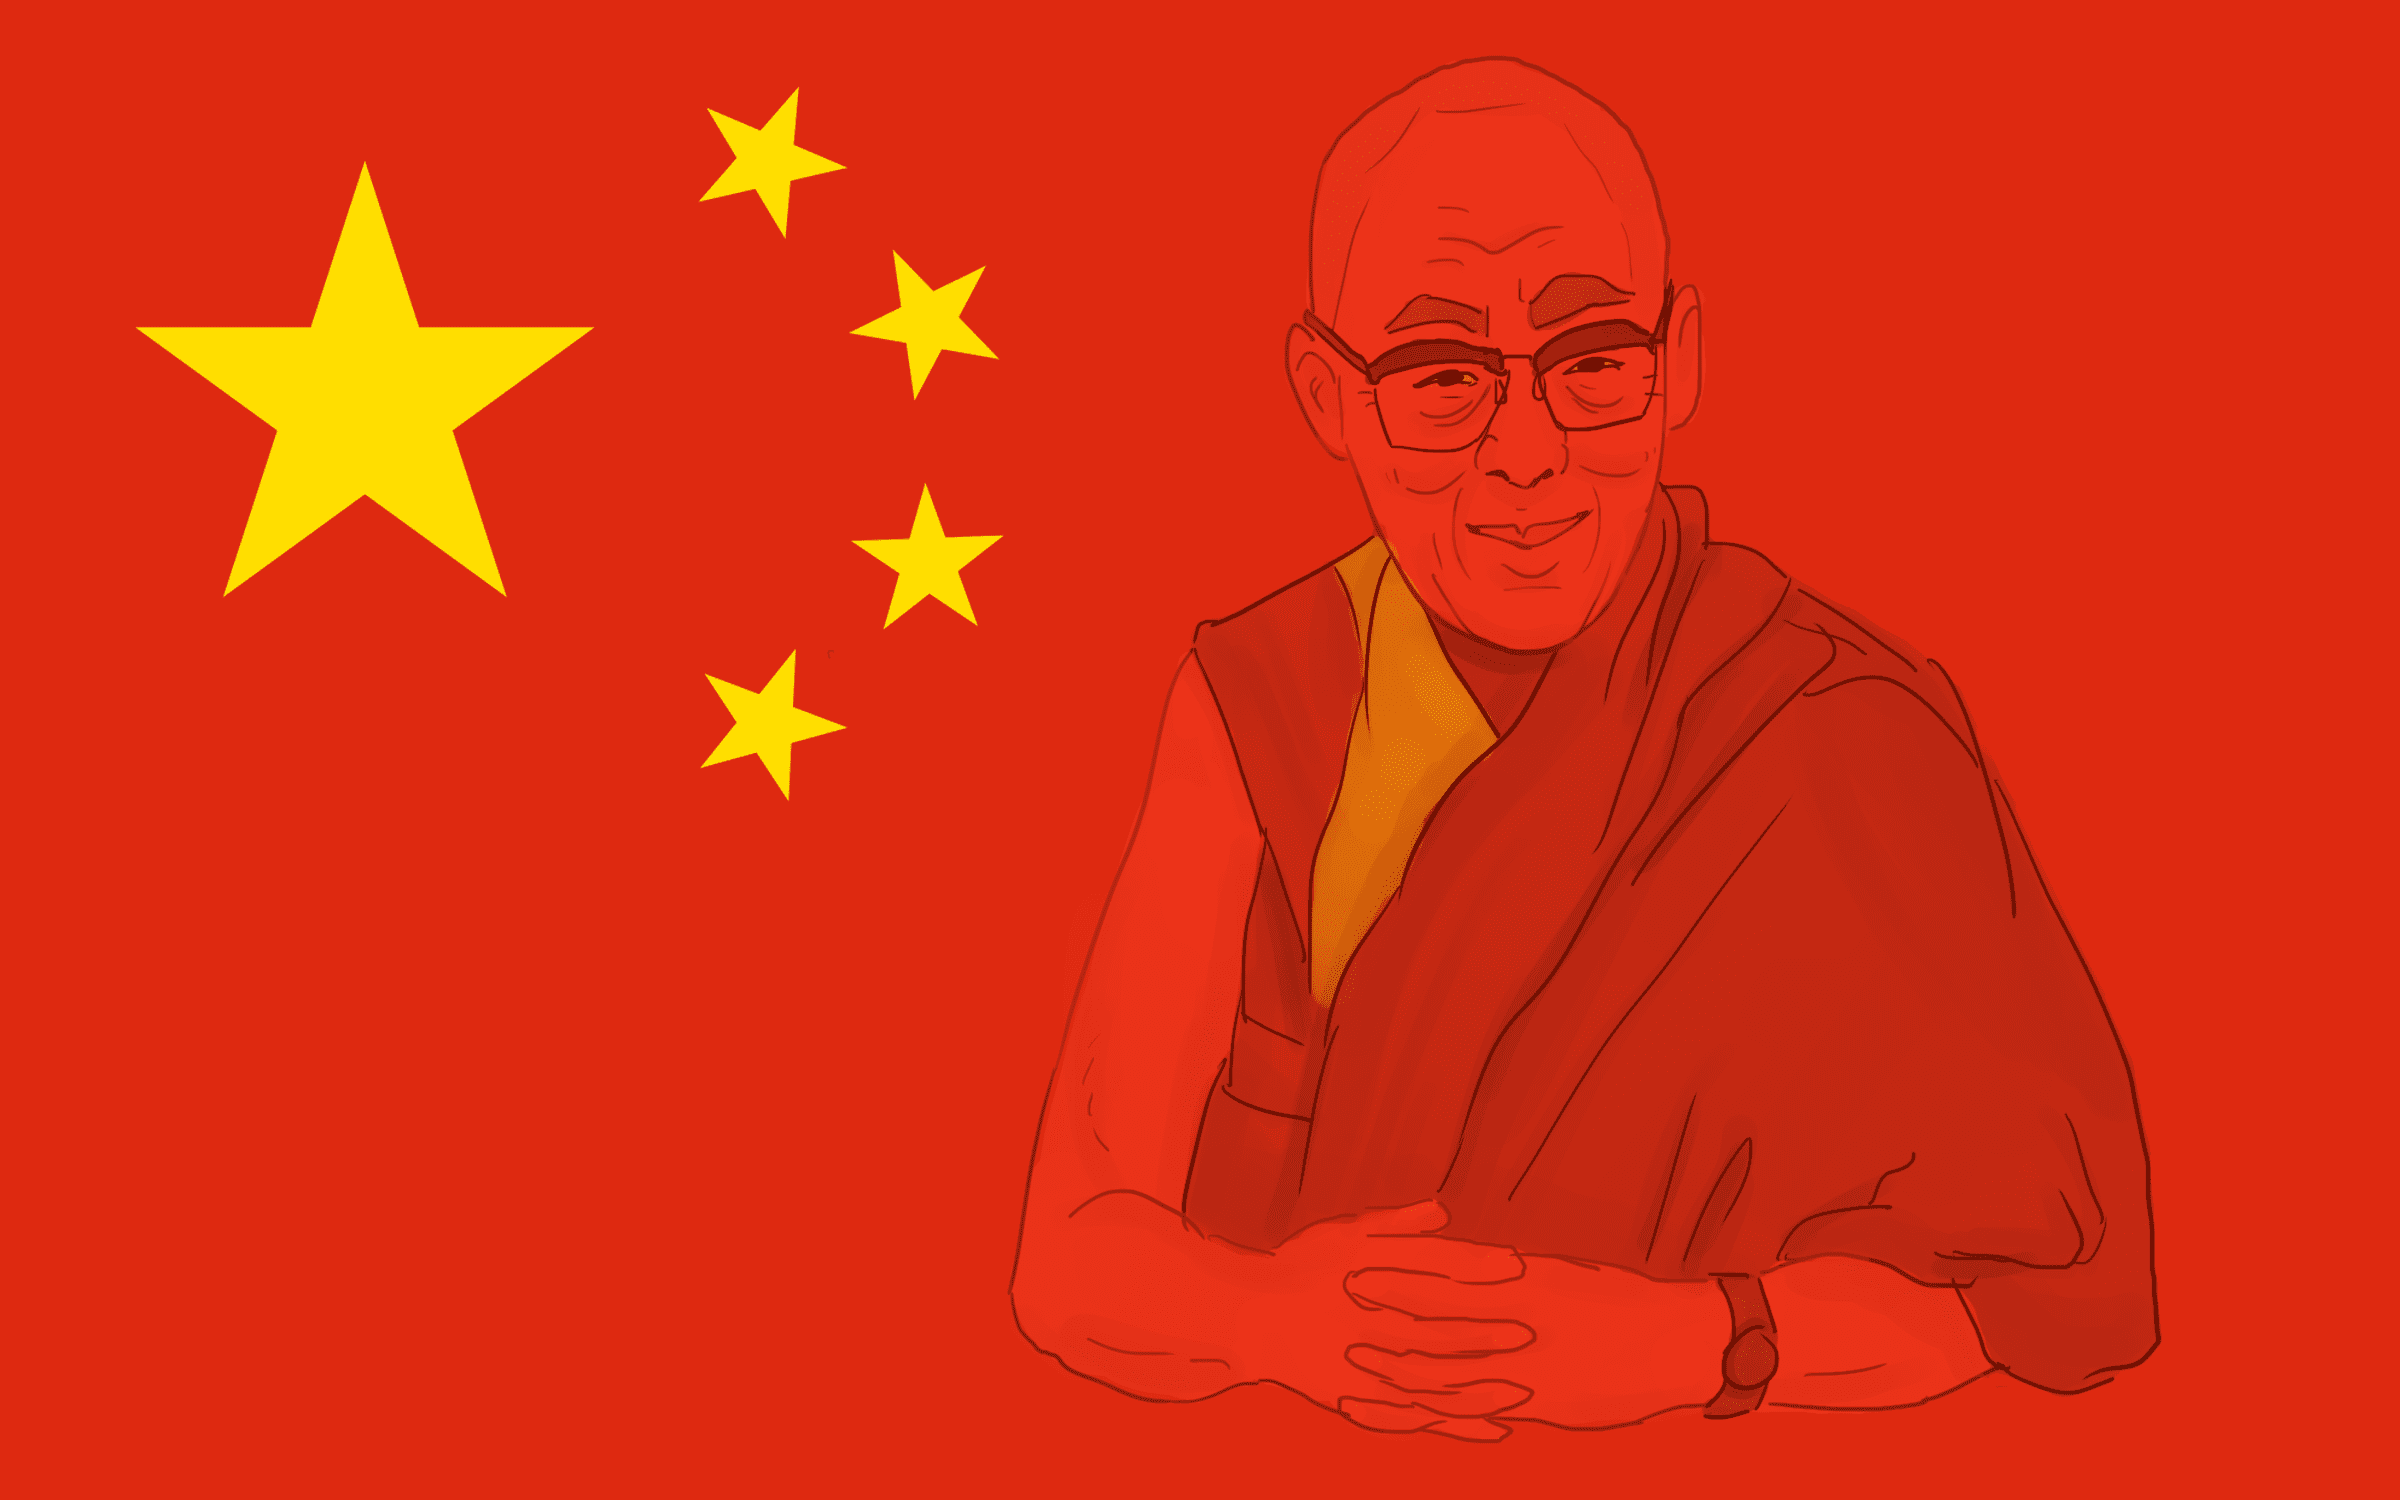 Dalai lama pronunciation